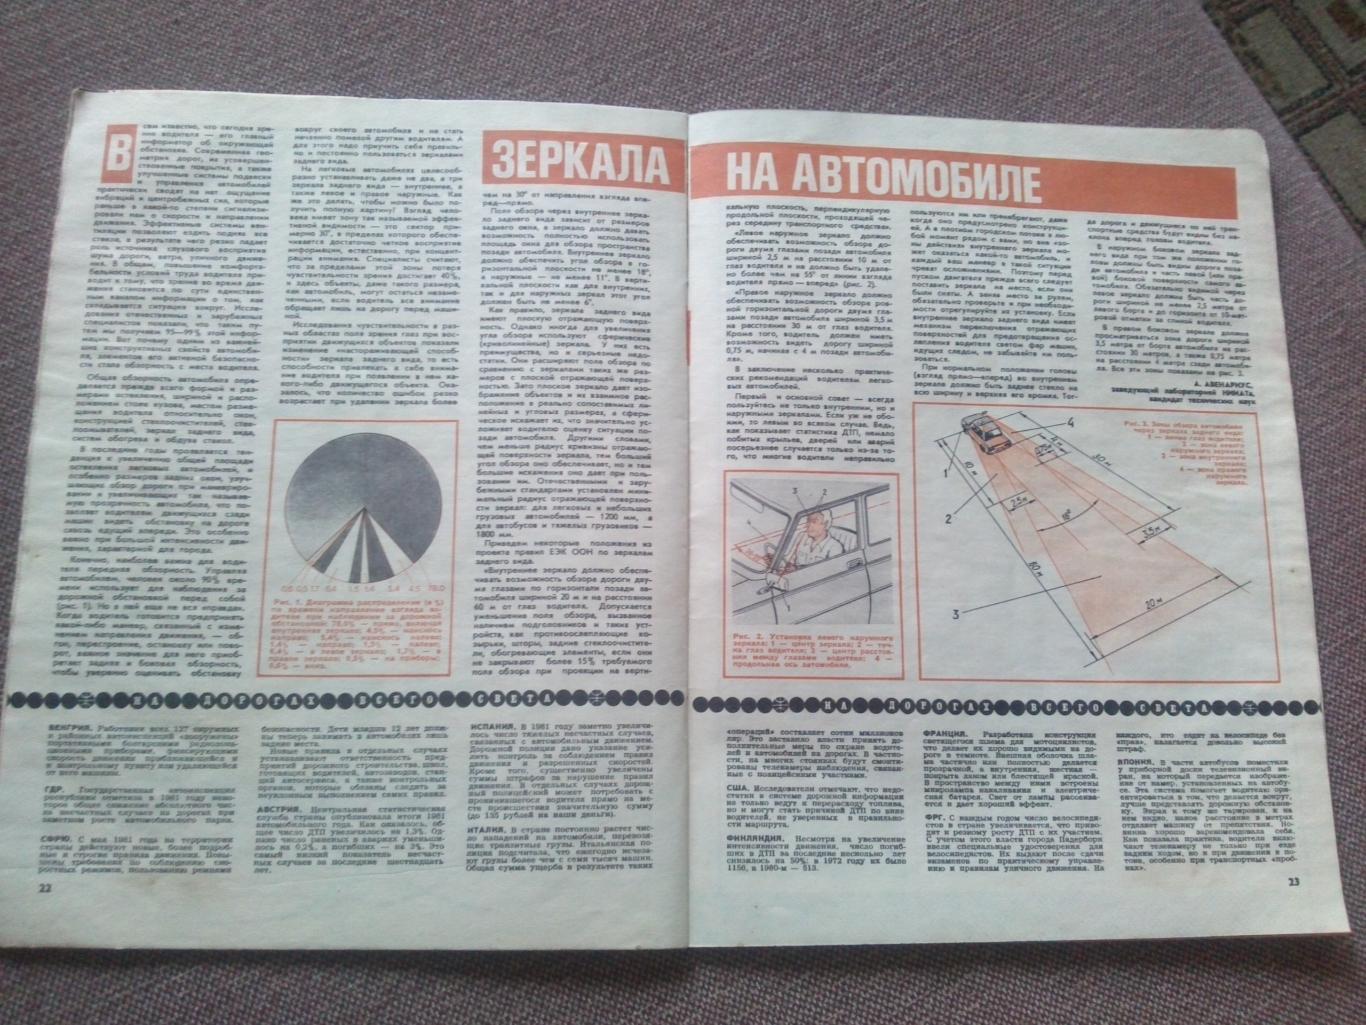 Журнал СССР :За рулем№ 7 ( июль ) 1982 г. ( Автомобиль , транспорт ) 4